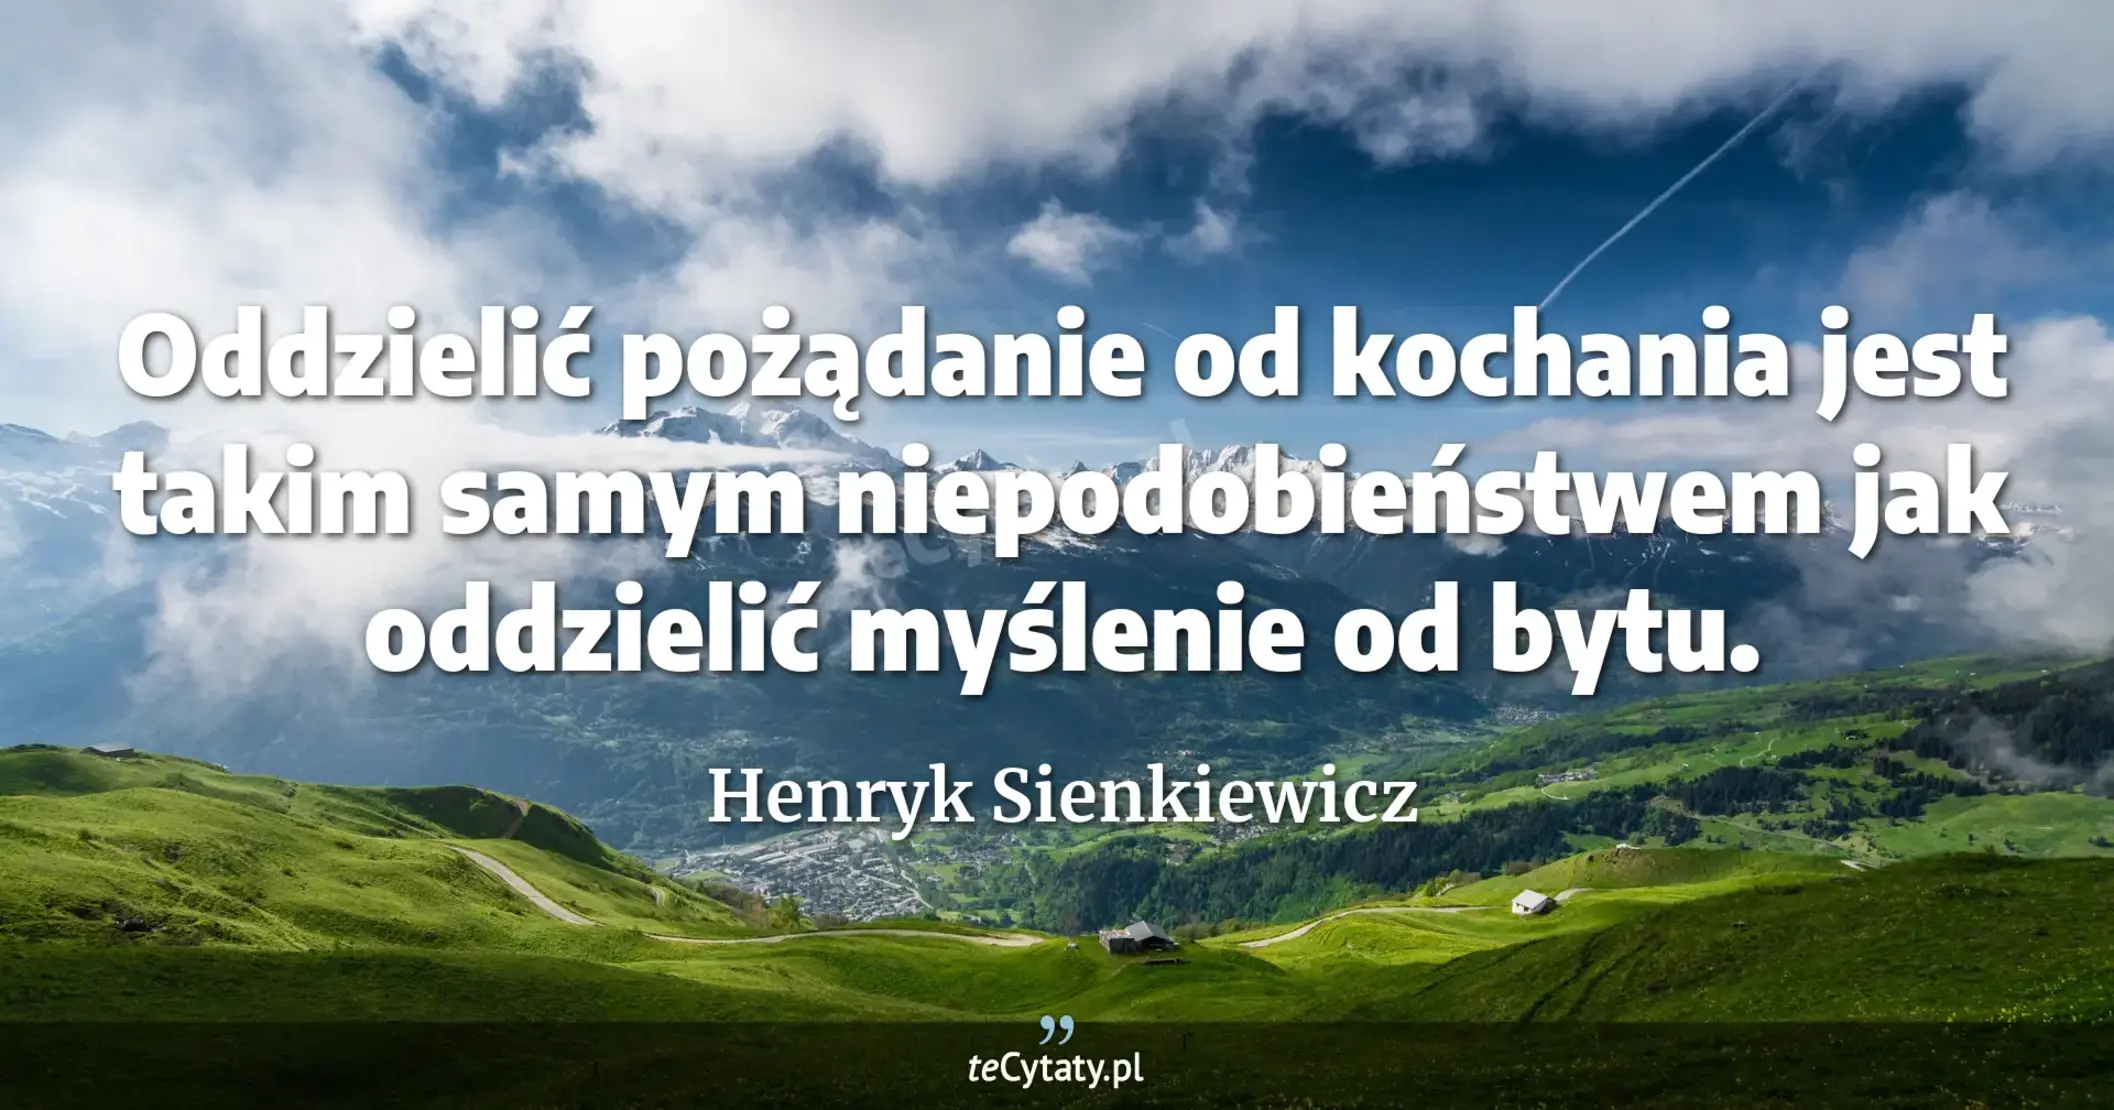 Oddzielić pożądanie od kochania jest takim samym niepodobieństwem jak oddzielić myślenie od bytu. - Henryk Sienkiewicz